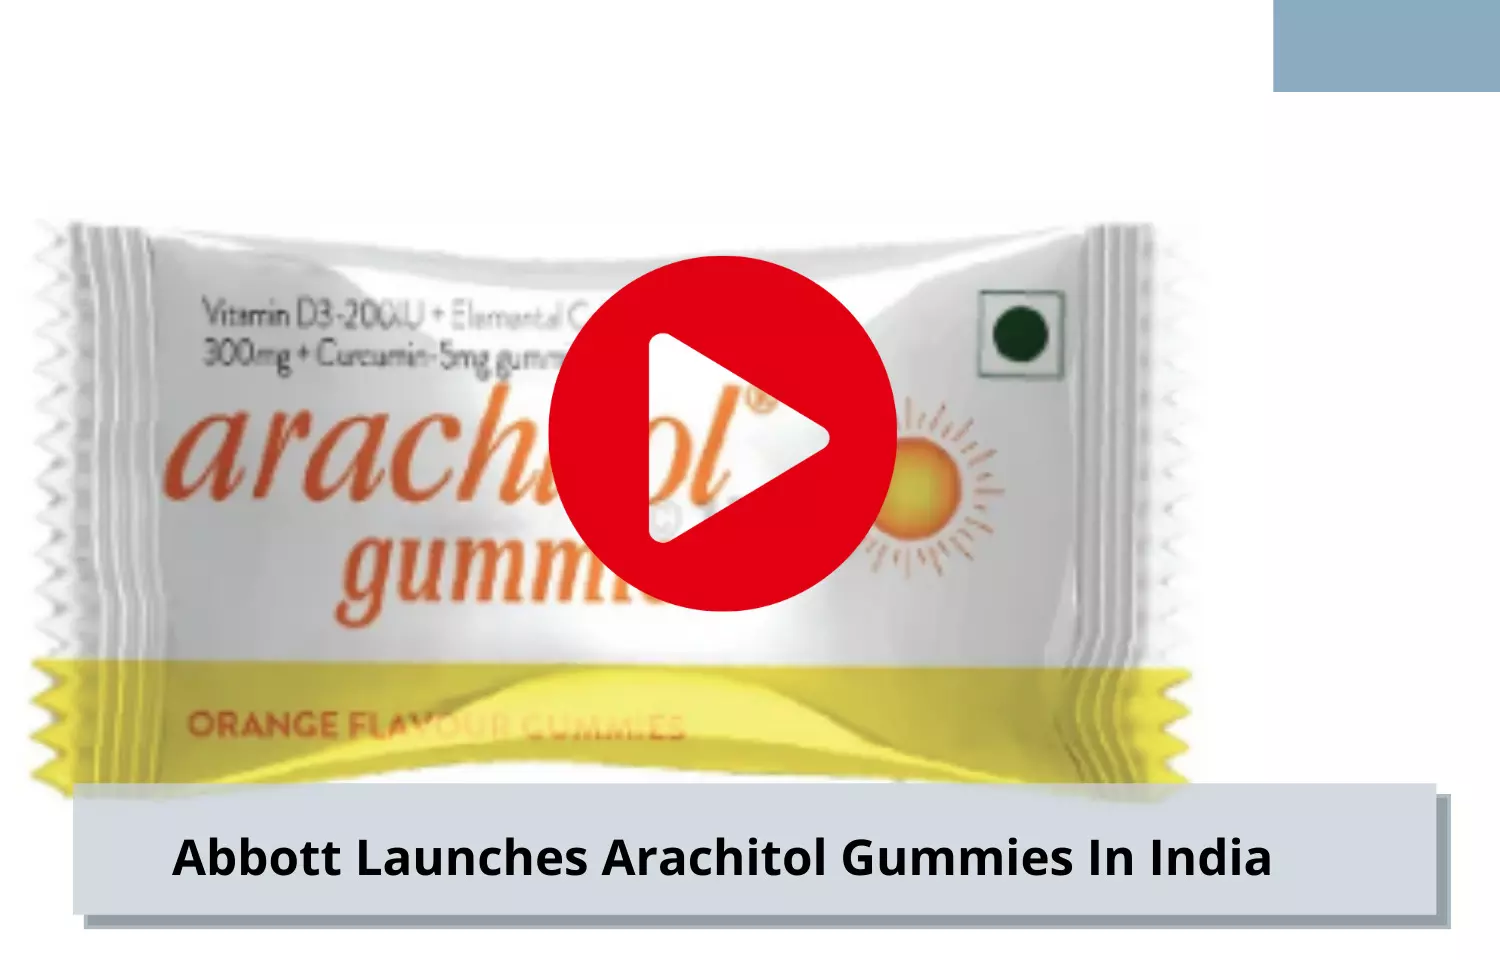 Abbott unveils Arachitol Gummies in India